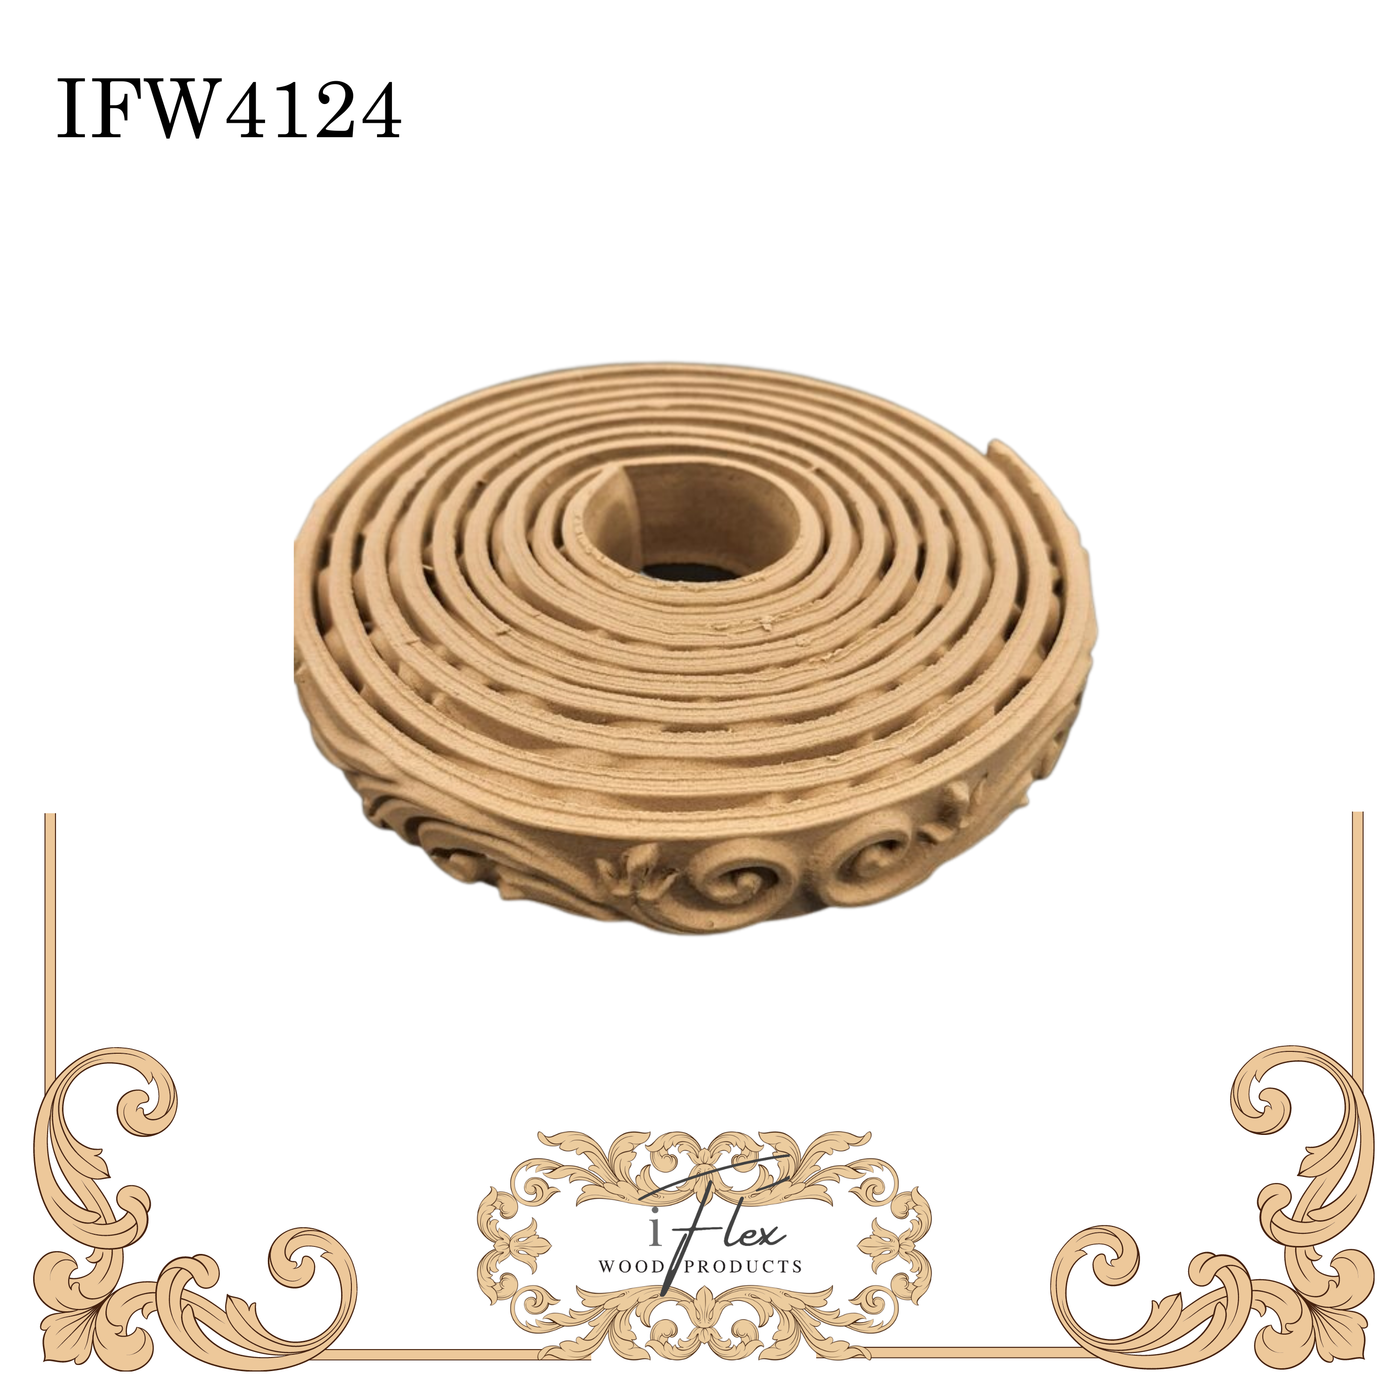 IFW 4124